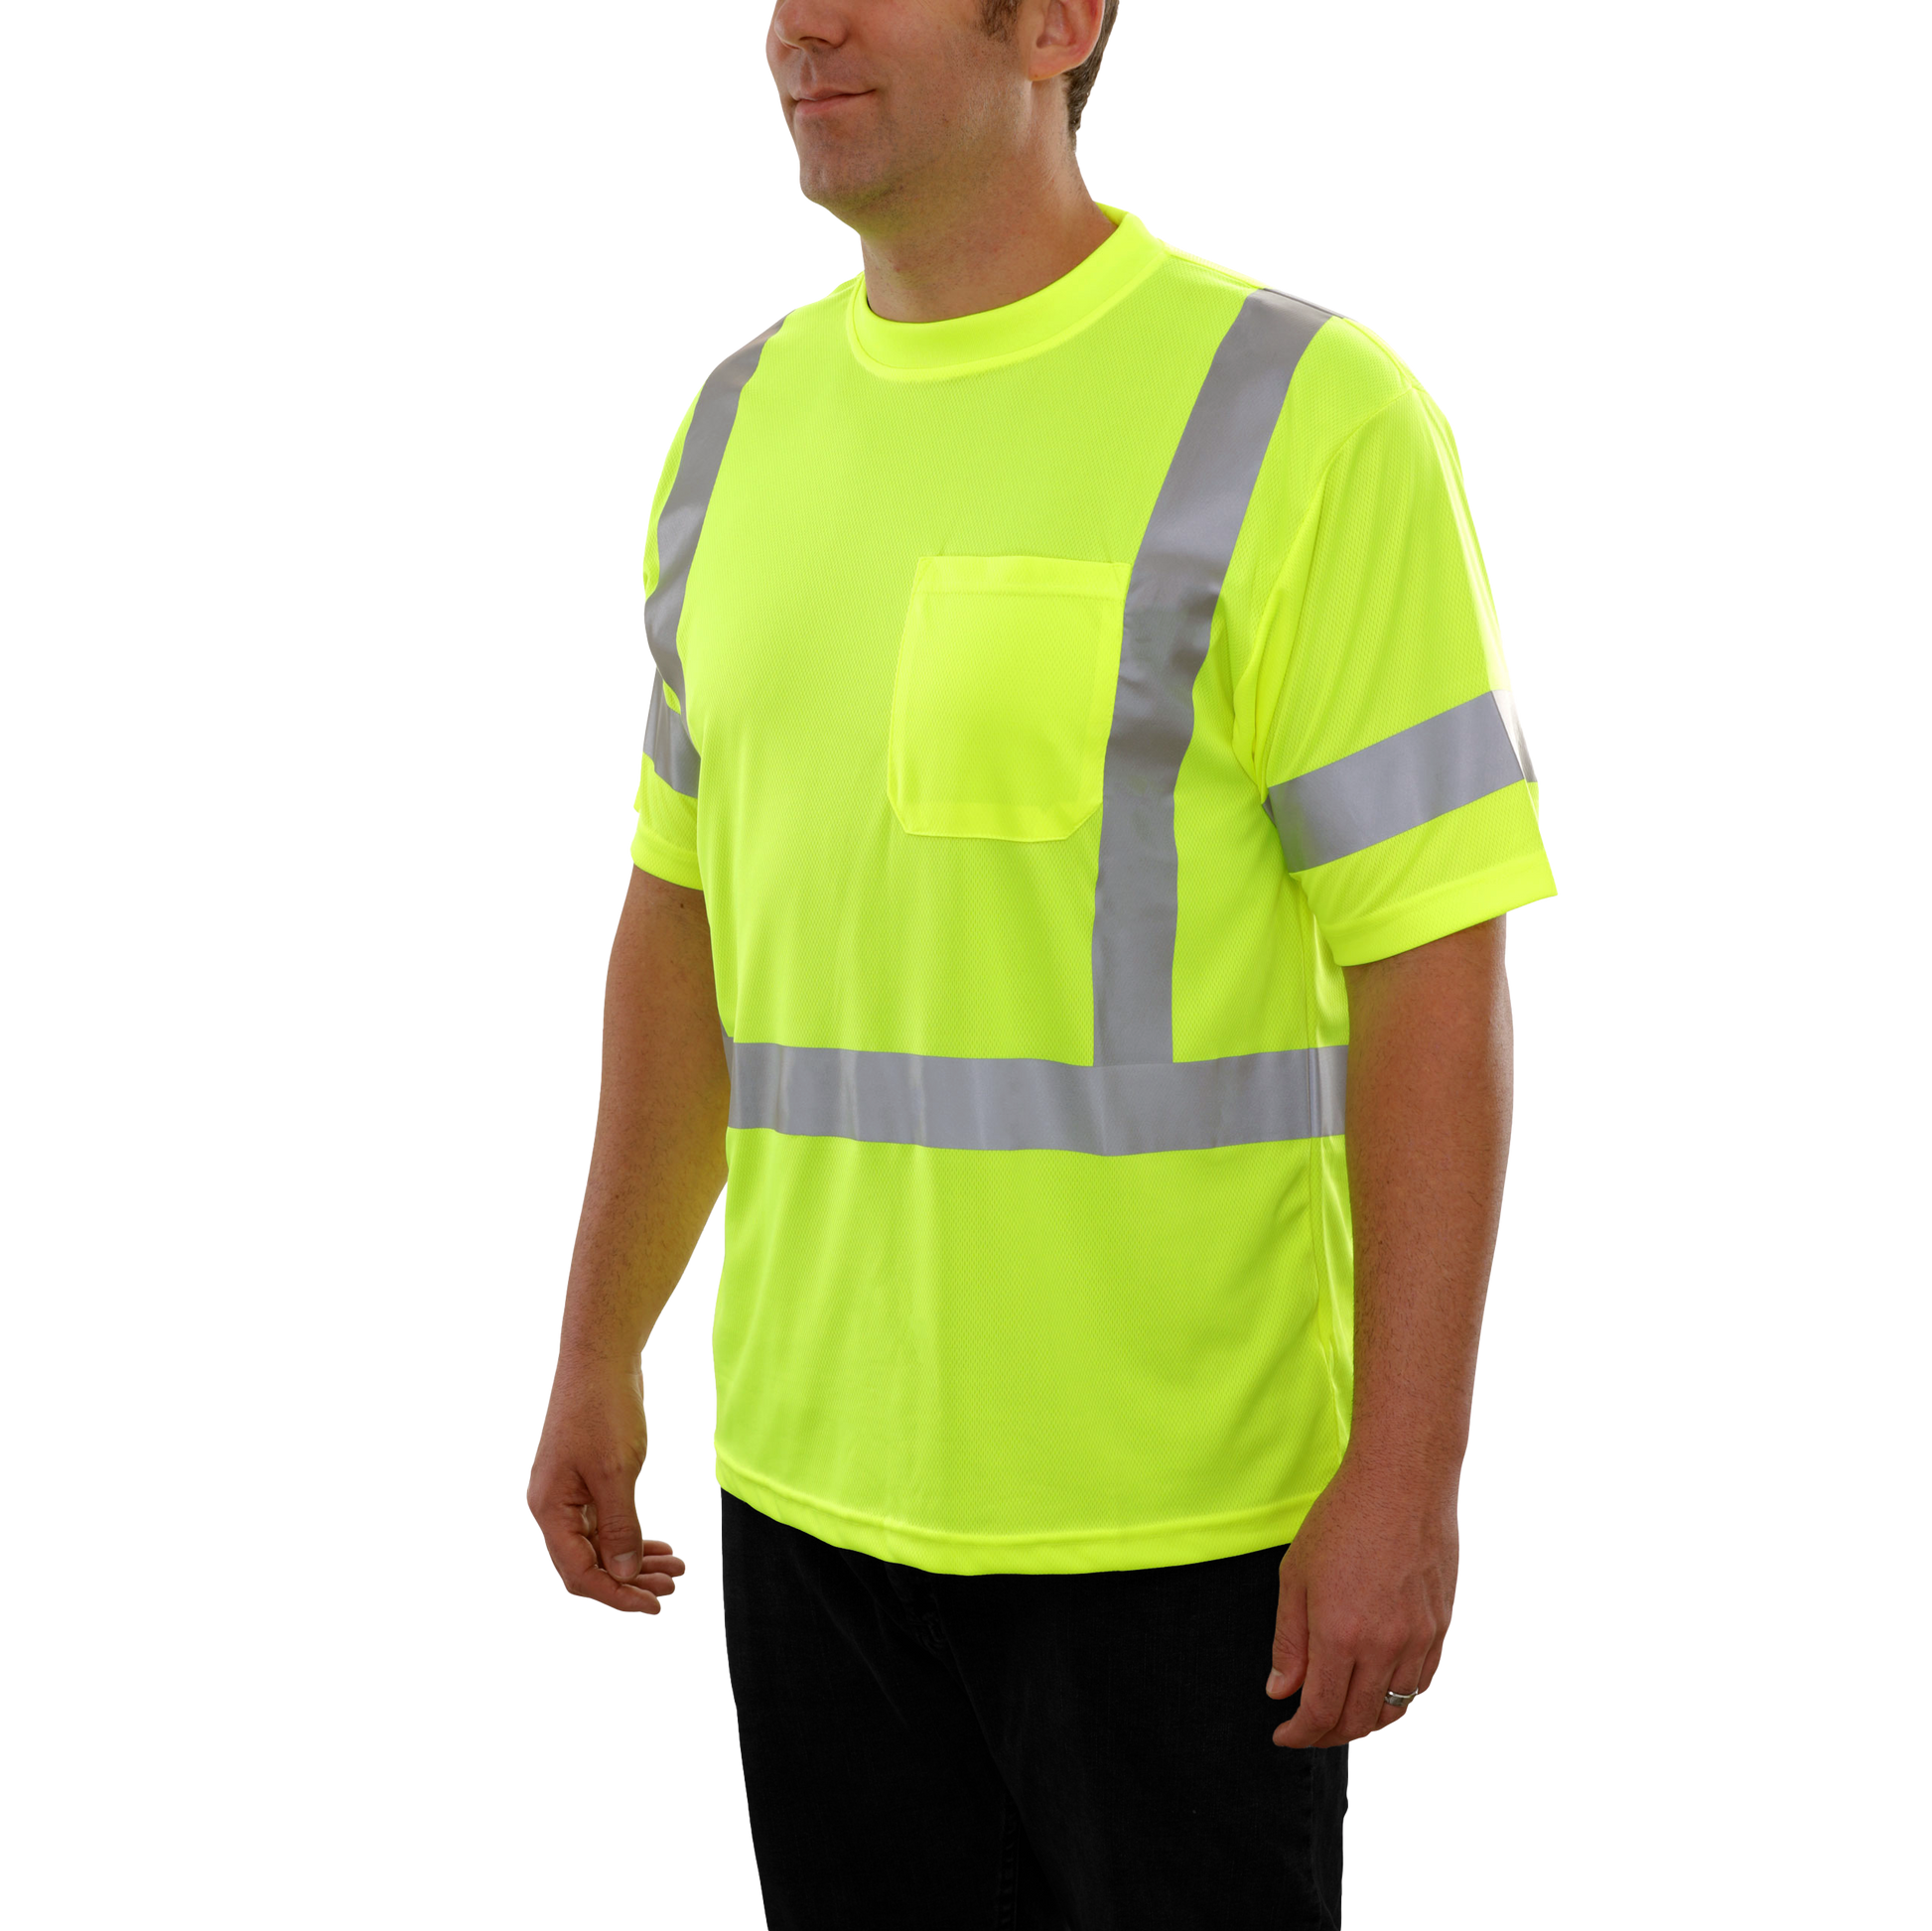 104STLM Hi-Vis Lime Birdseye Pocket Safety T-Shirt